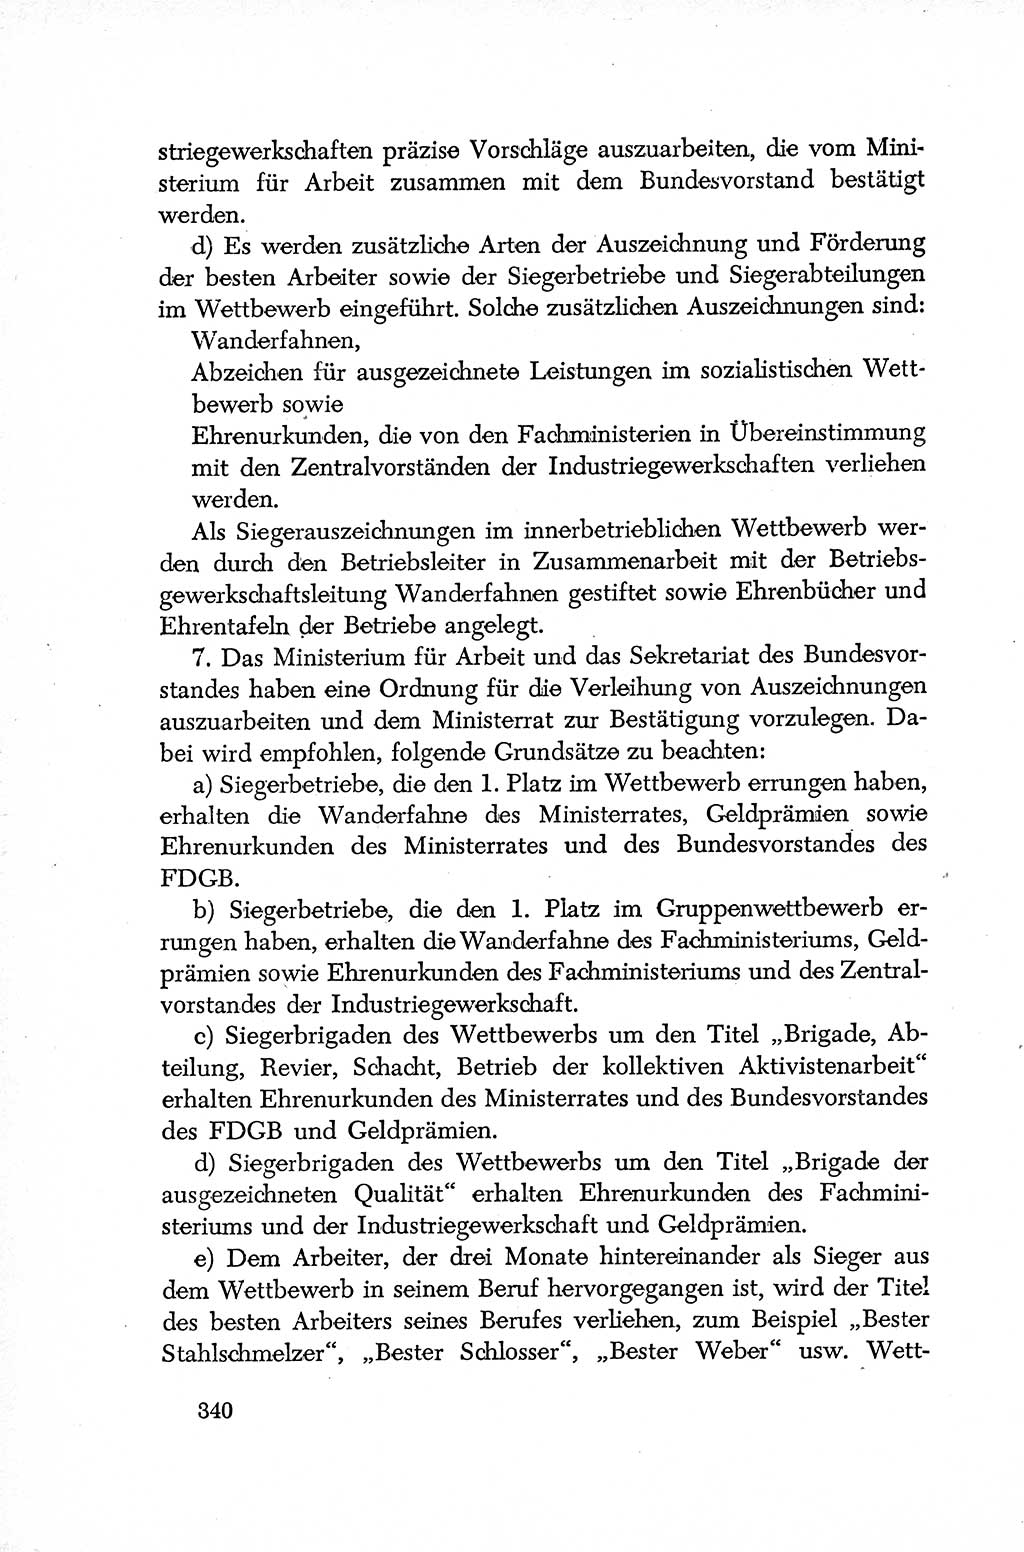 Dokumente der Sozialistischen Einheitspartei Deutschlands (SED) [Deutsche Demokratische Republik (DDR)] 1952-1953, Seite 340 (Dok. SED DDR 1952-1953, S. 340)